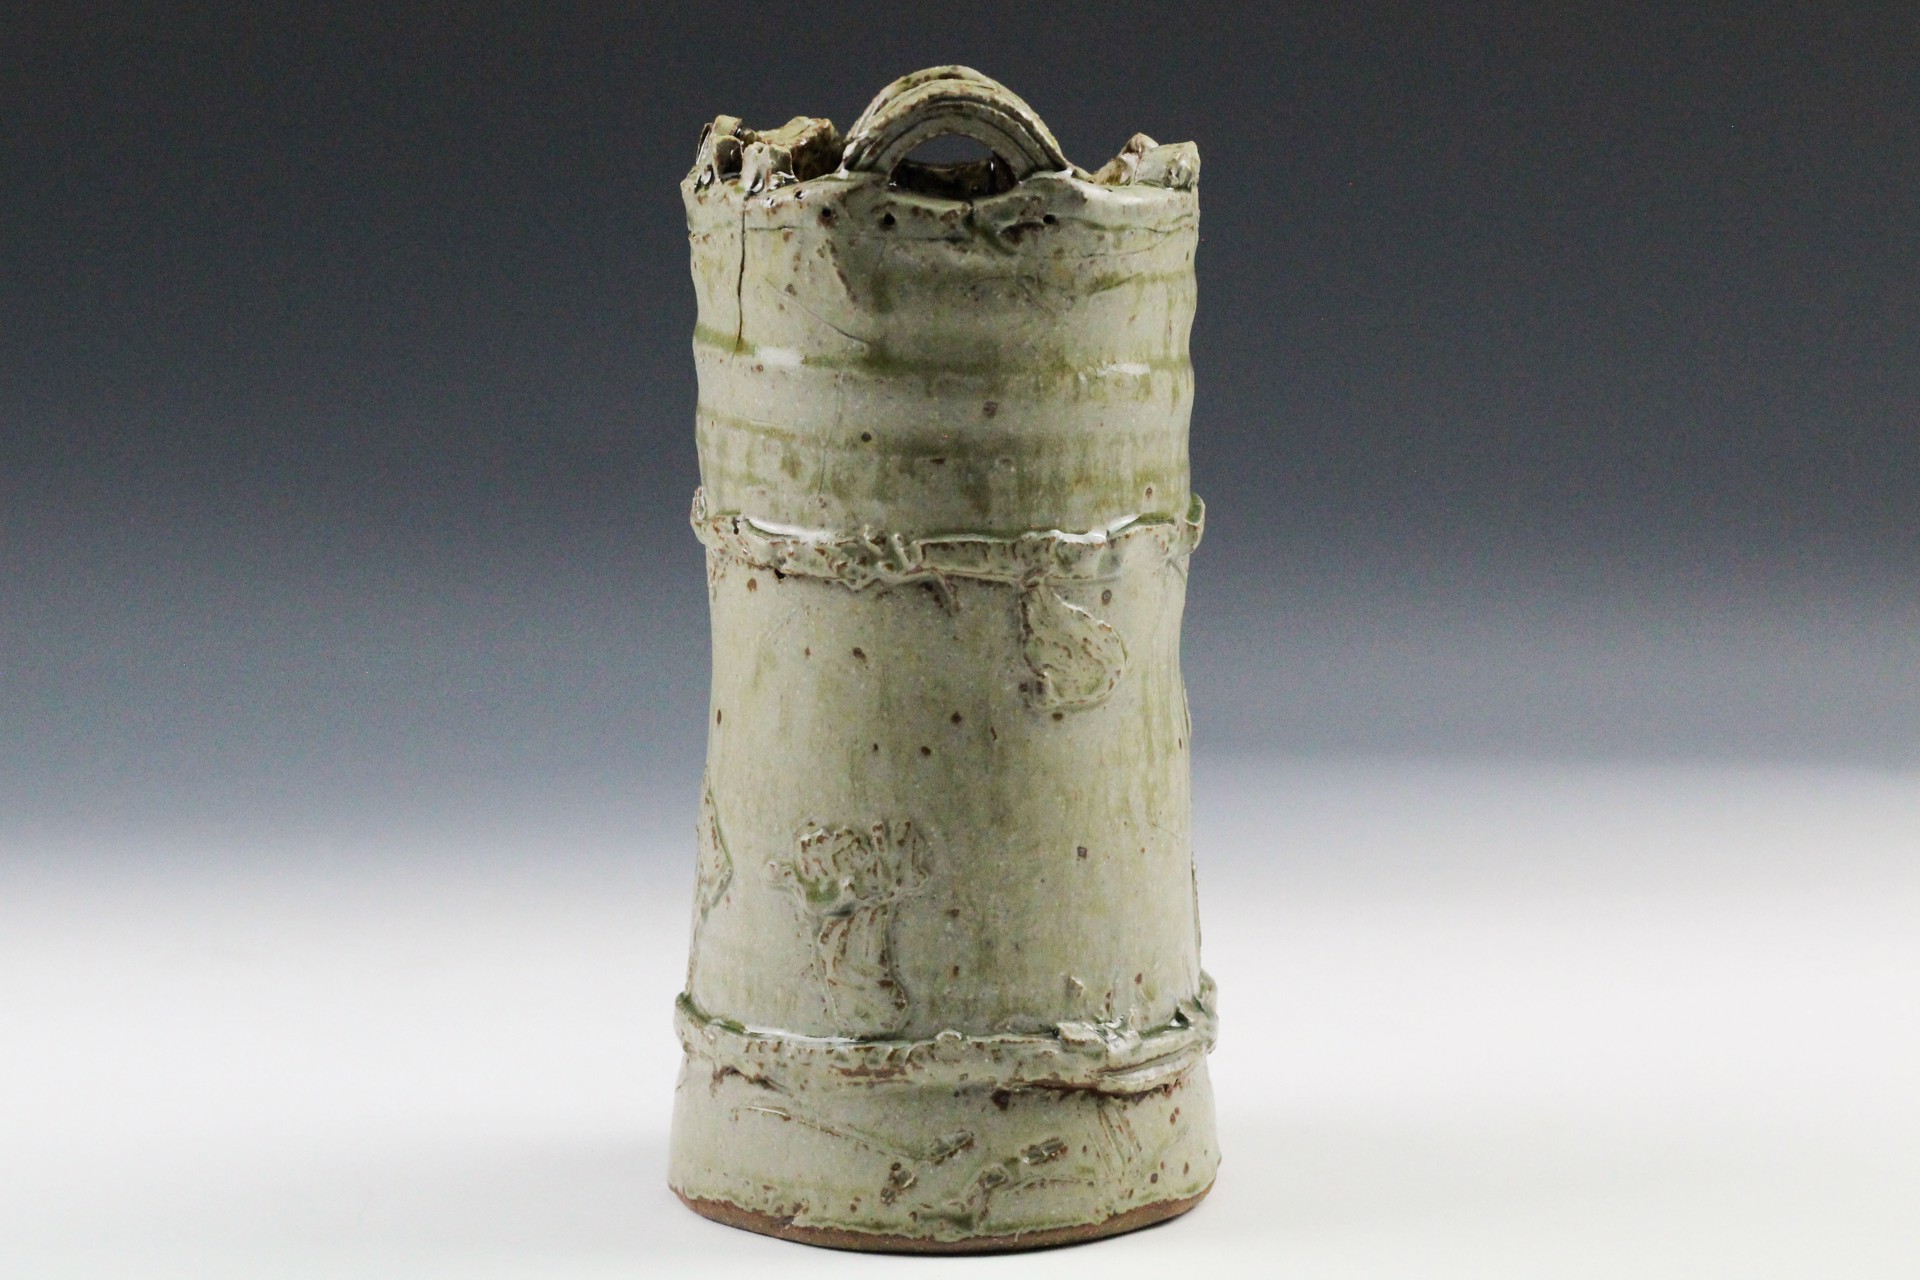 Vase by Rick Hintze